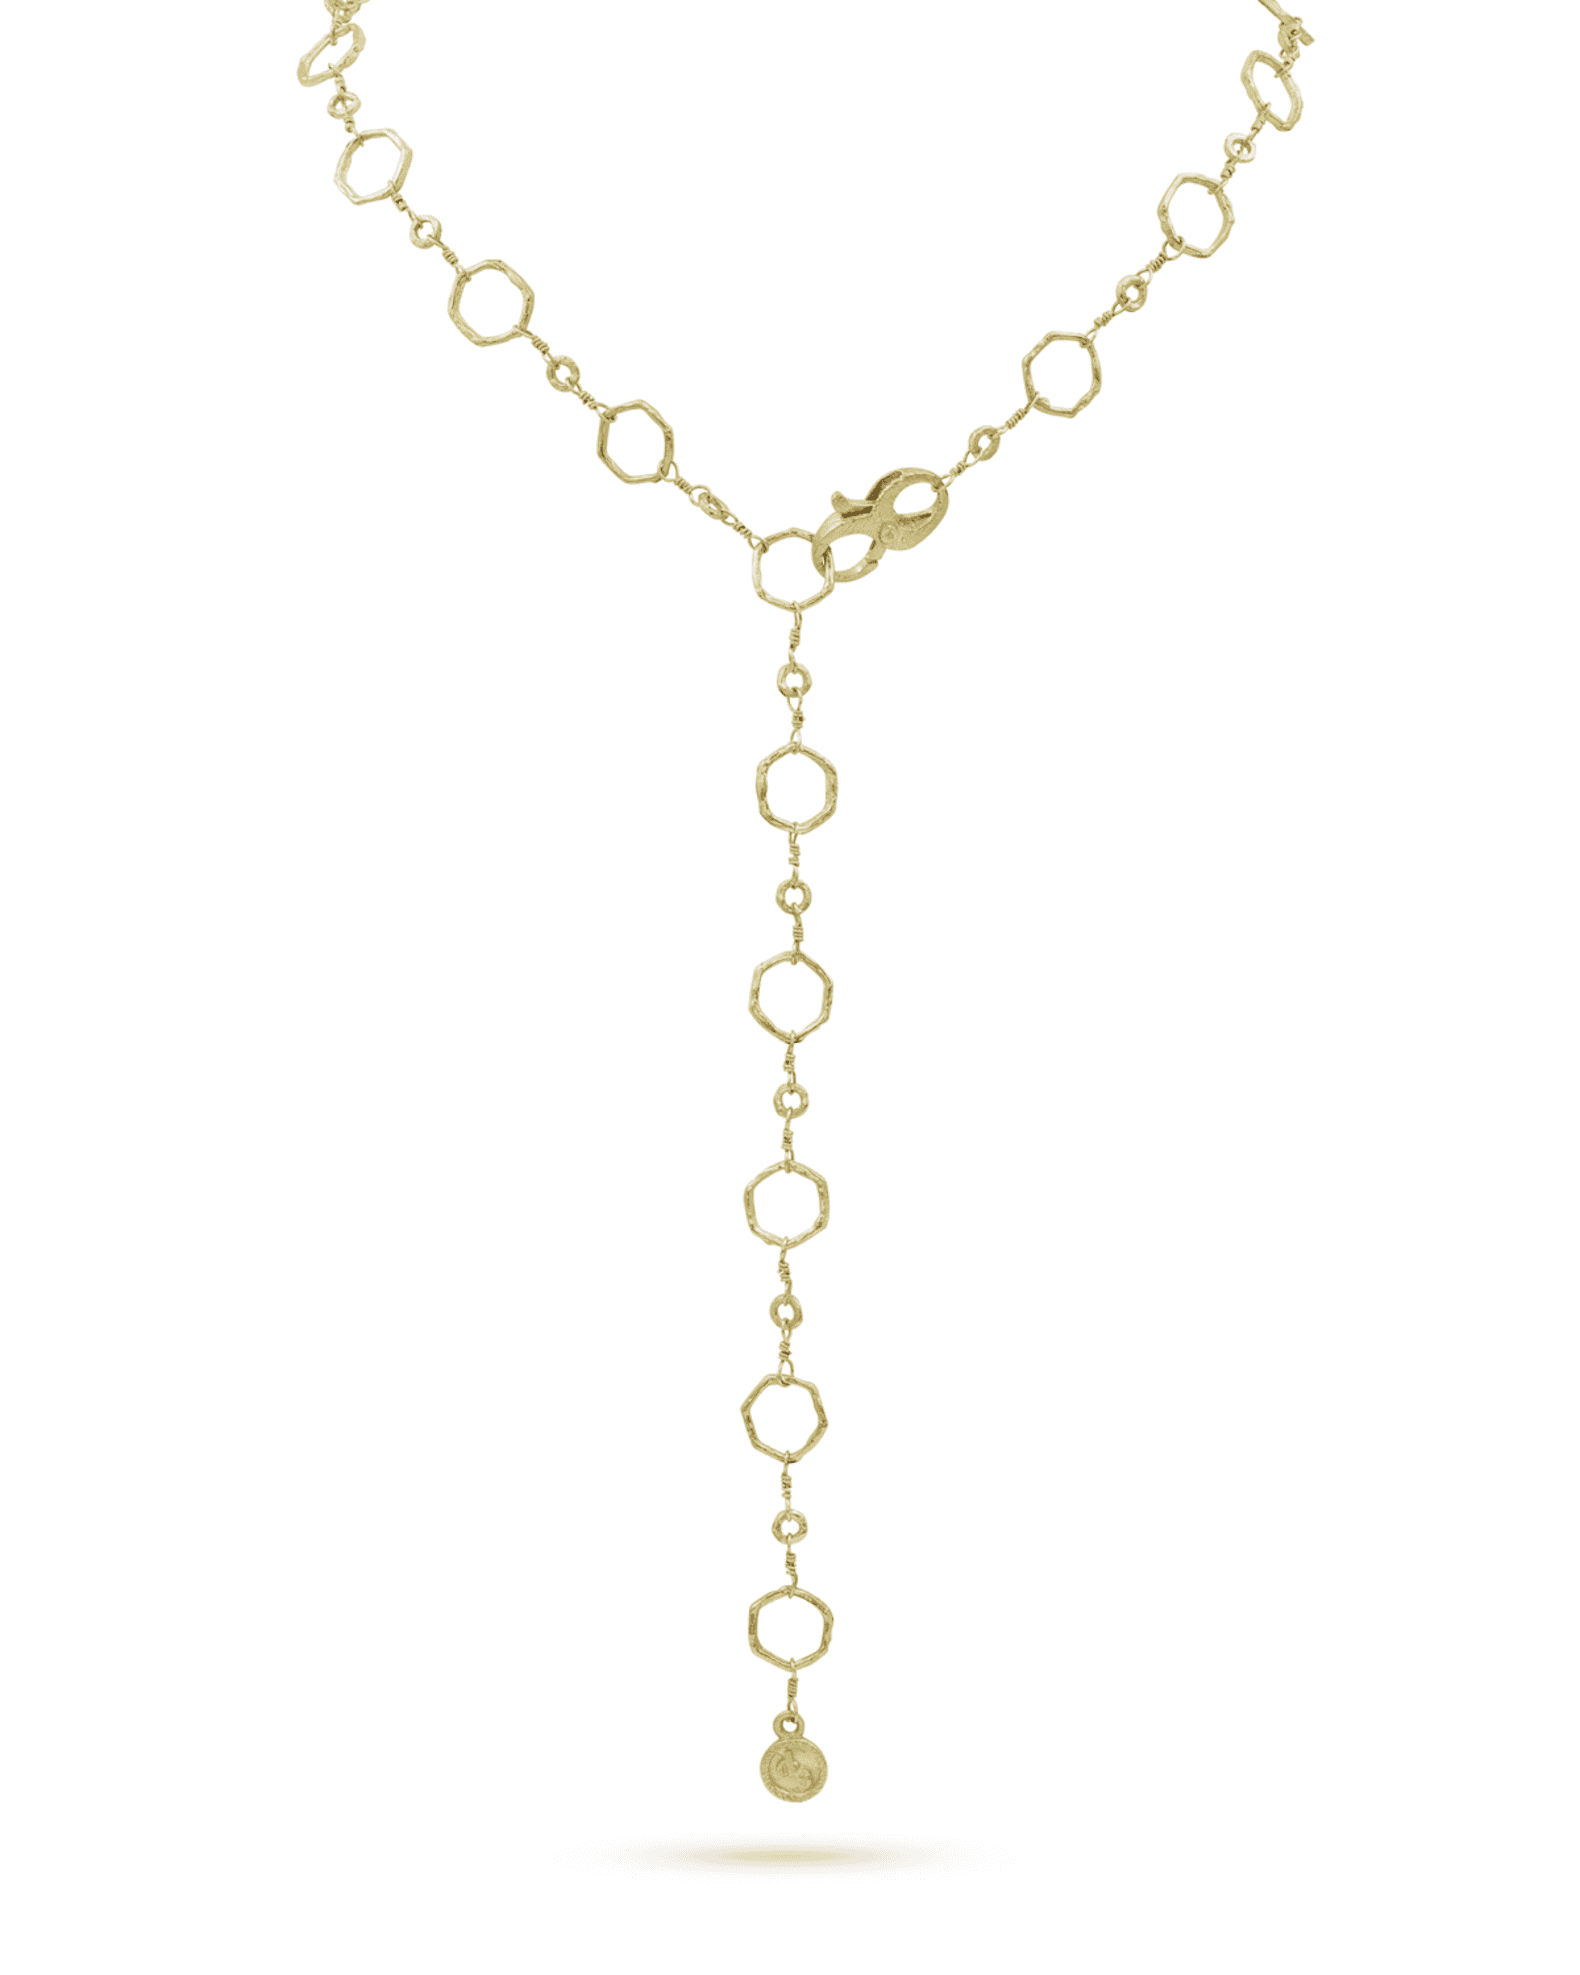 Dominique Cohen 18k Gold Hexagonal Chain Necklace | Neiman Marcus